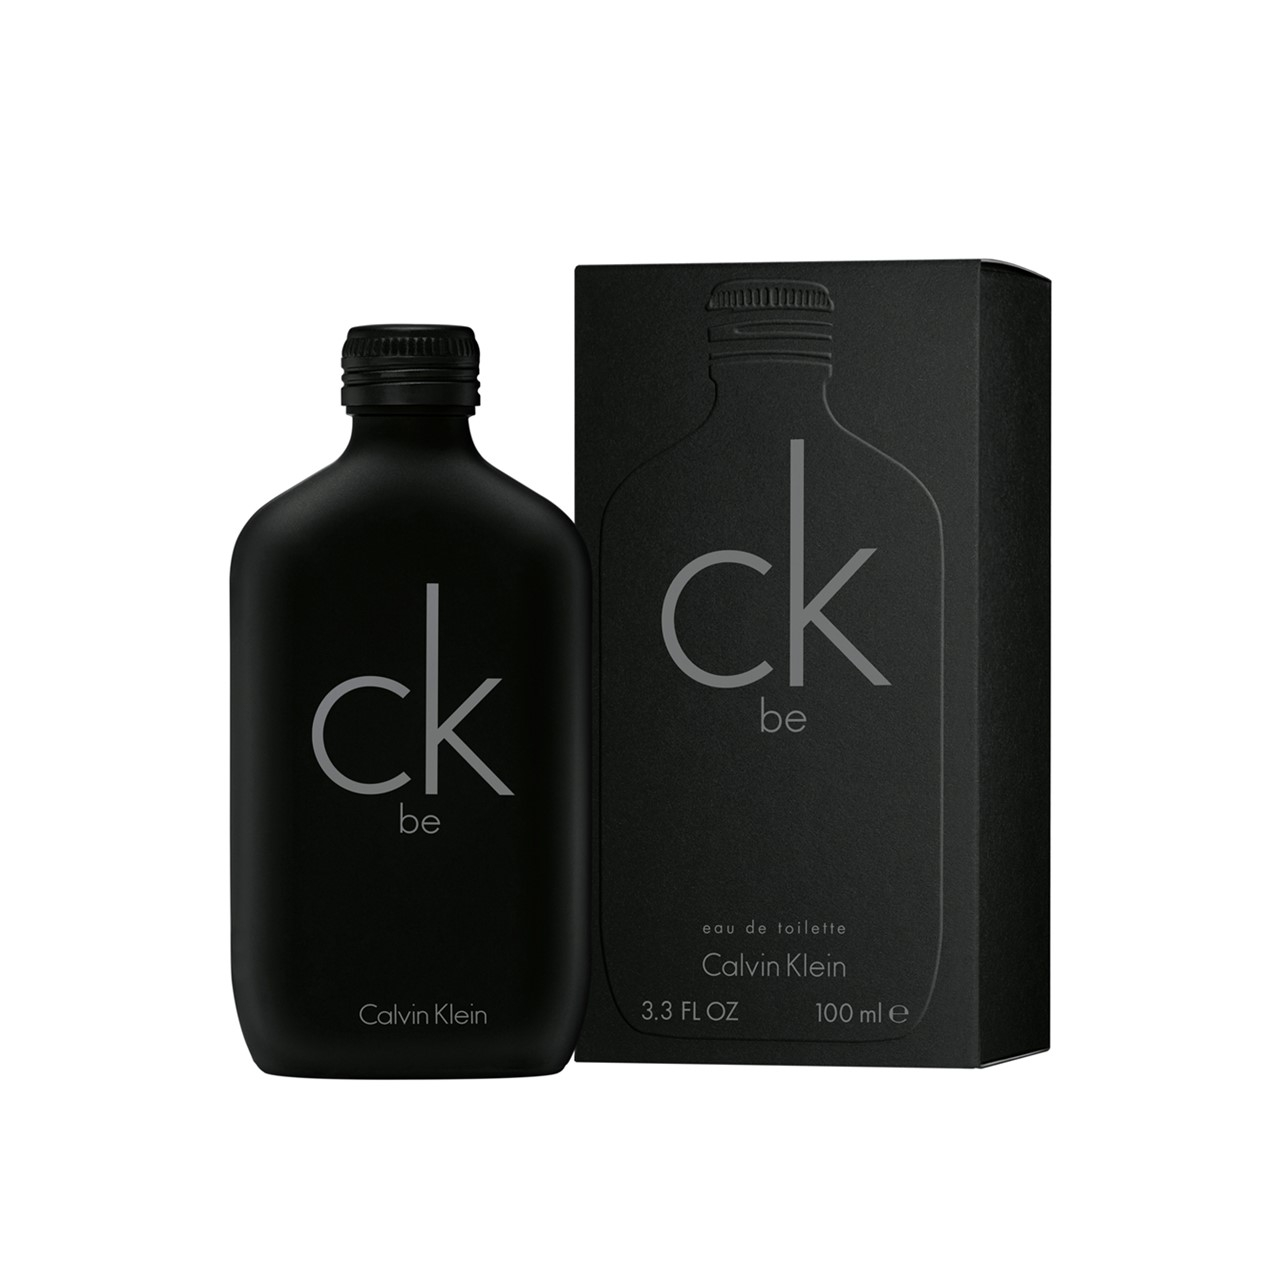 Buy Calvin Klein (3.4fl.oz.) Eau de Be 100ml Toilette CK · USA